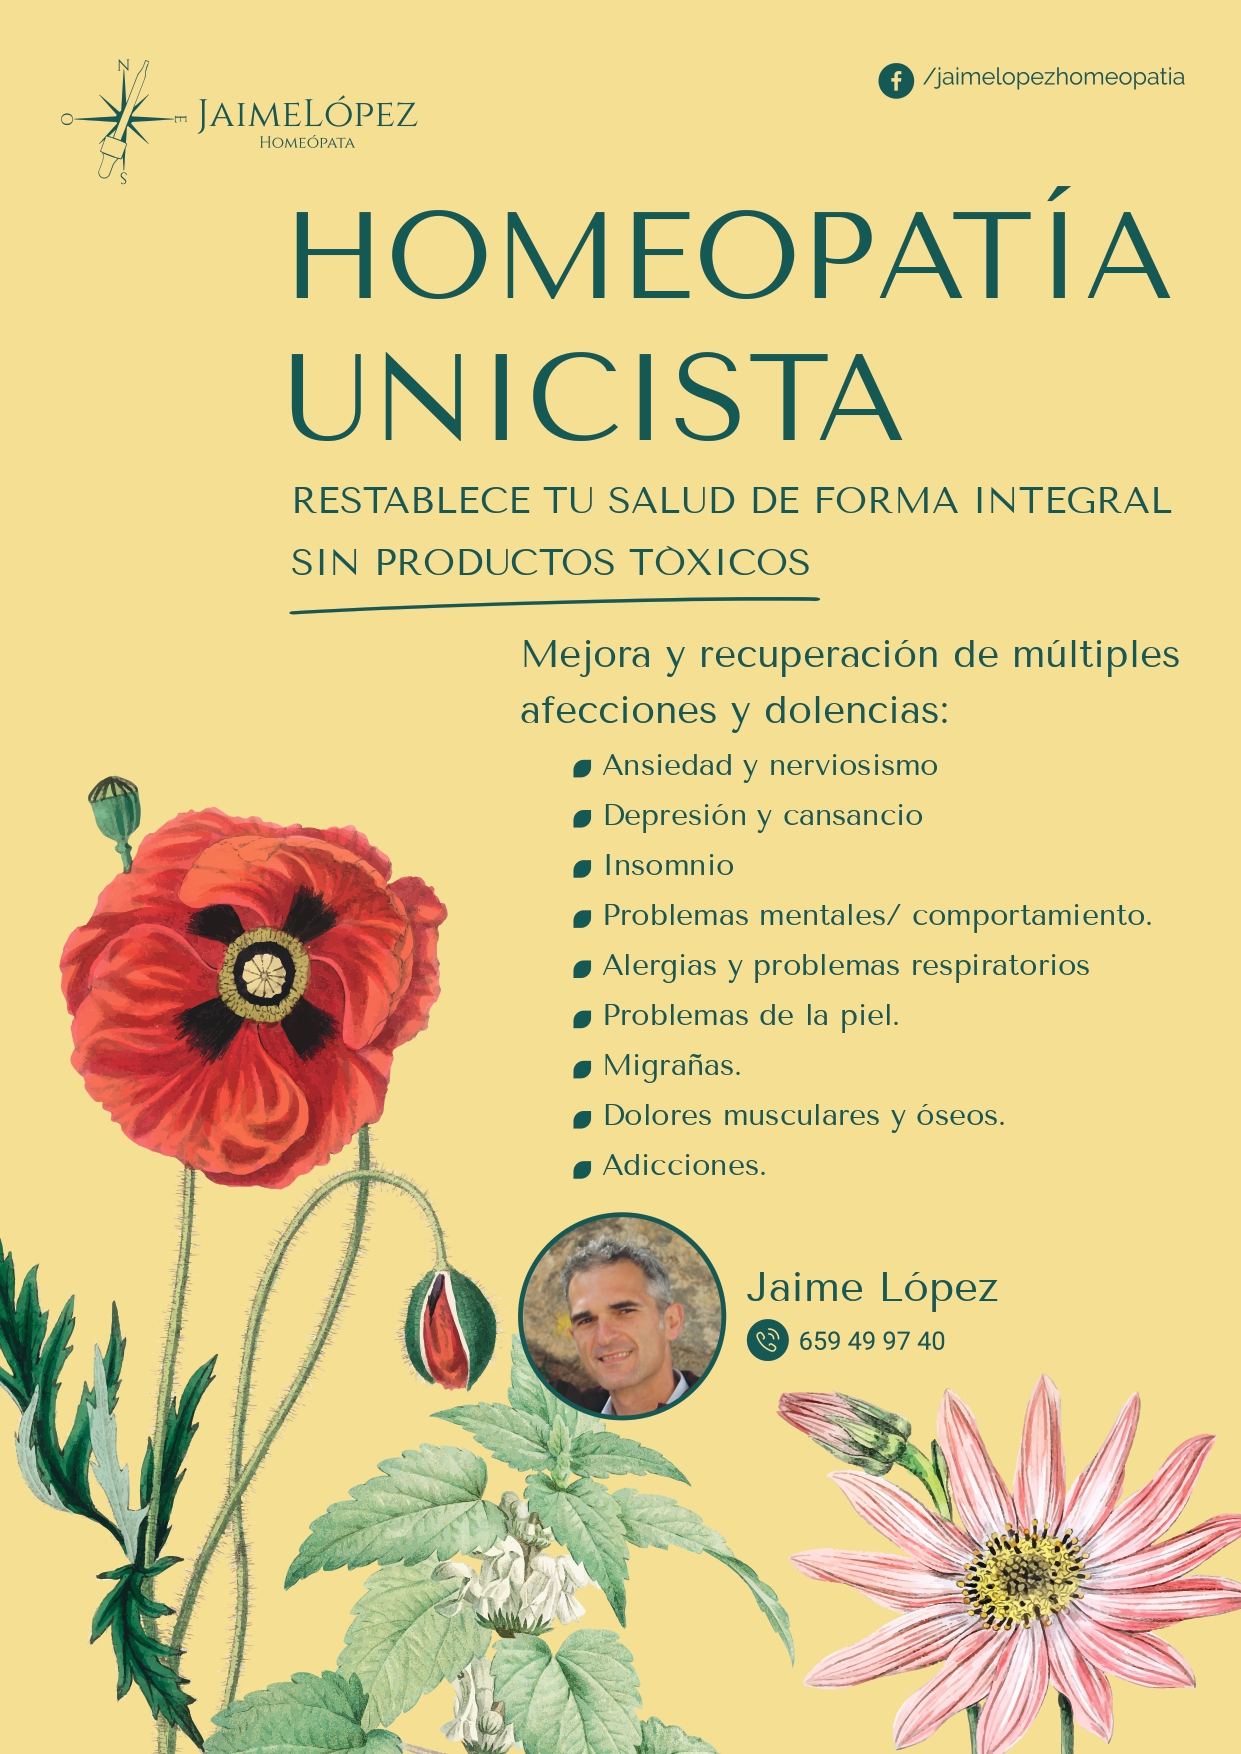 Images Jaime Lopez Homeopatía